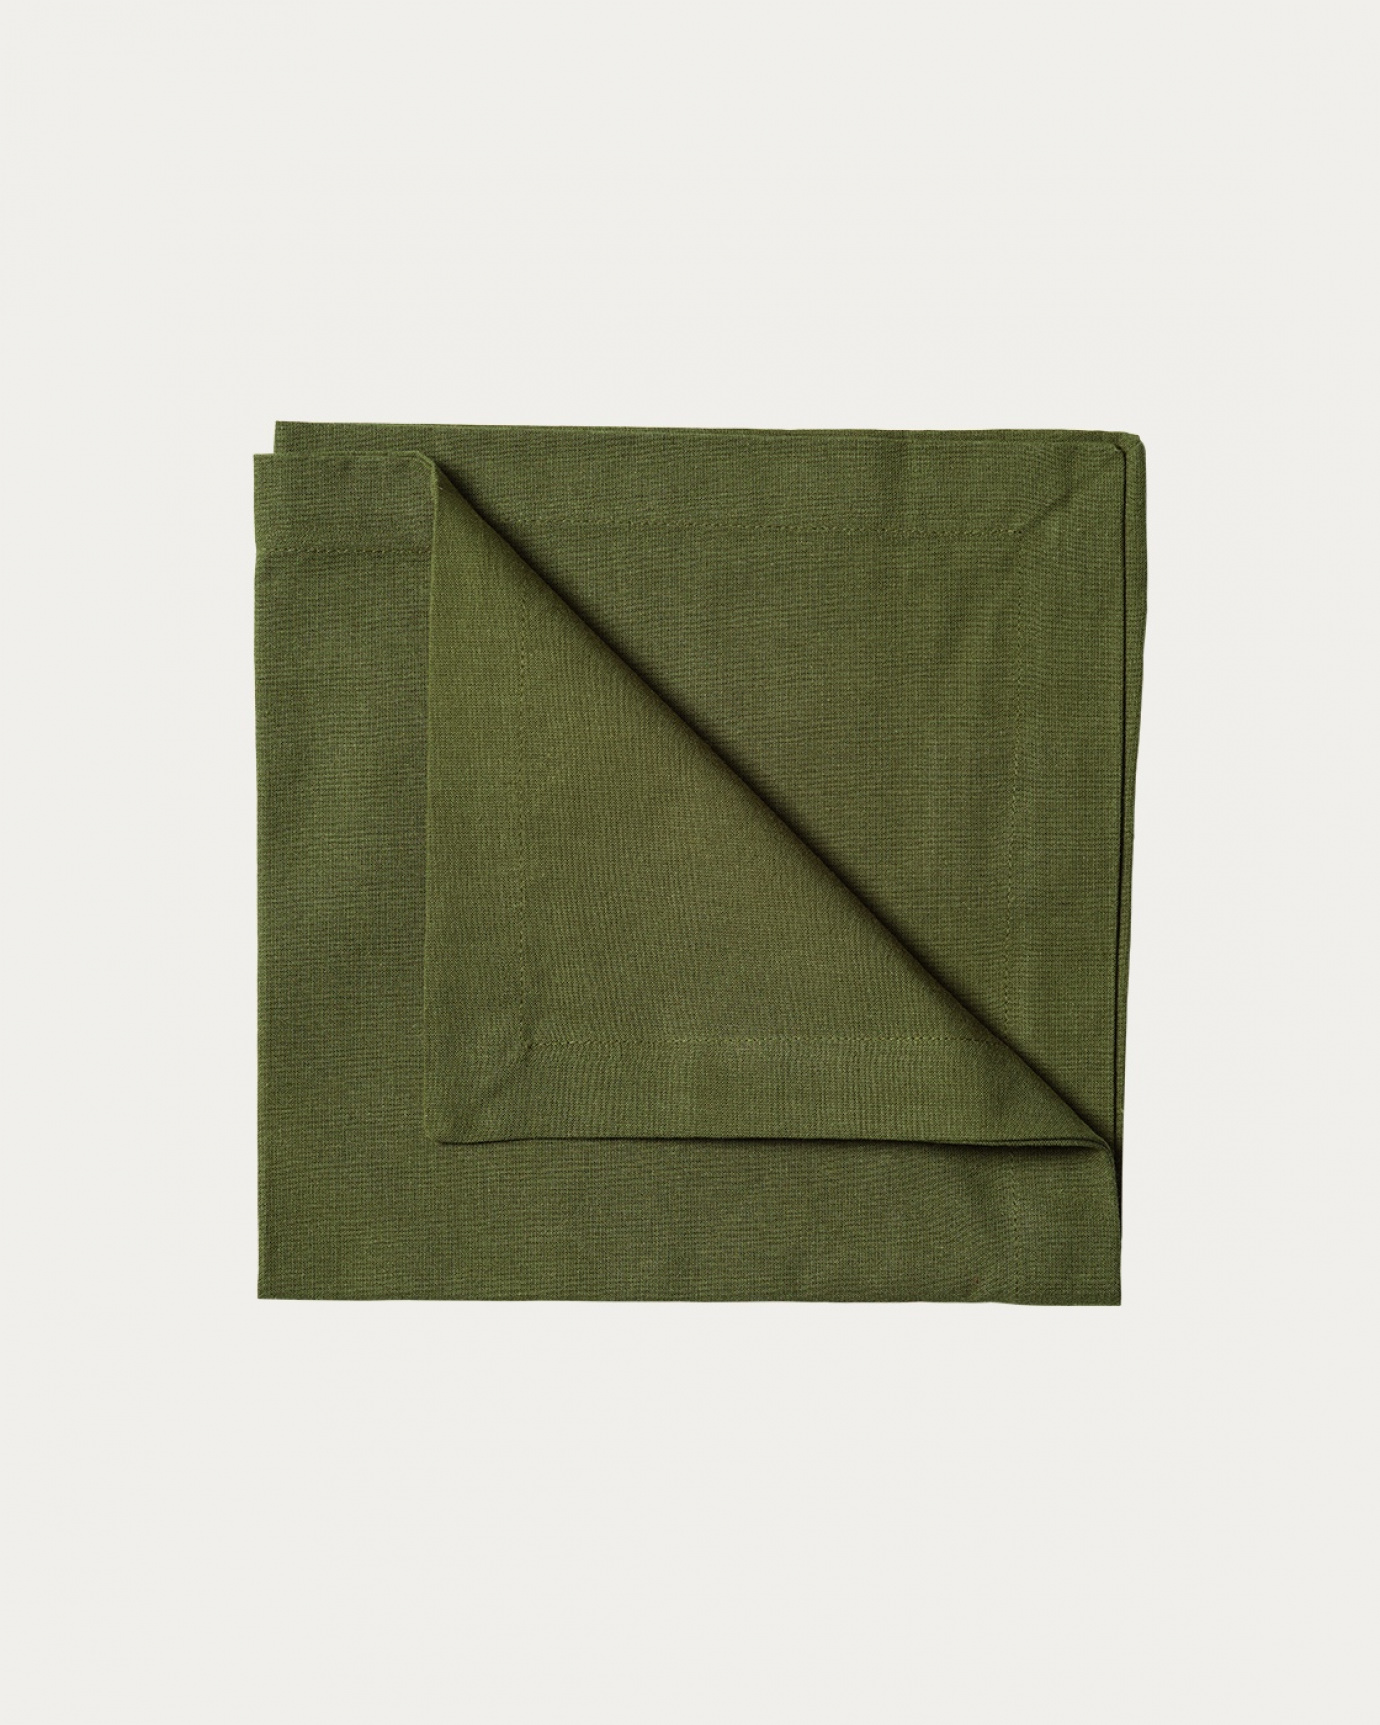 Image du produit serviette de table ROBERT vert olive foncé en coton doux de LINUM DESIGN. Taille 45 x 45 cm et vendu en lot de 4.